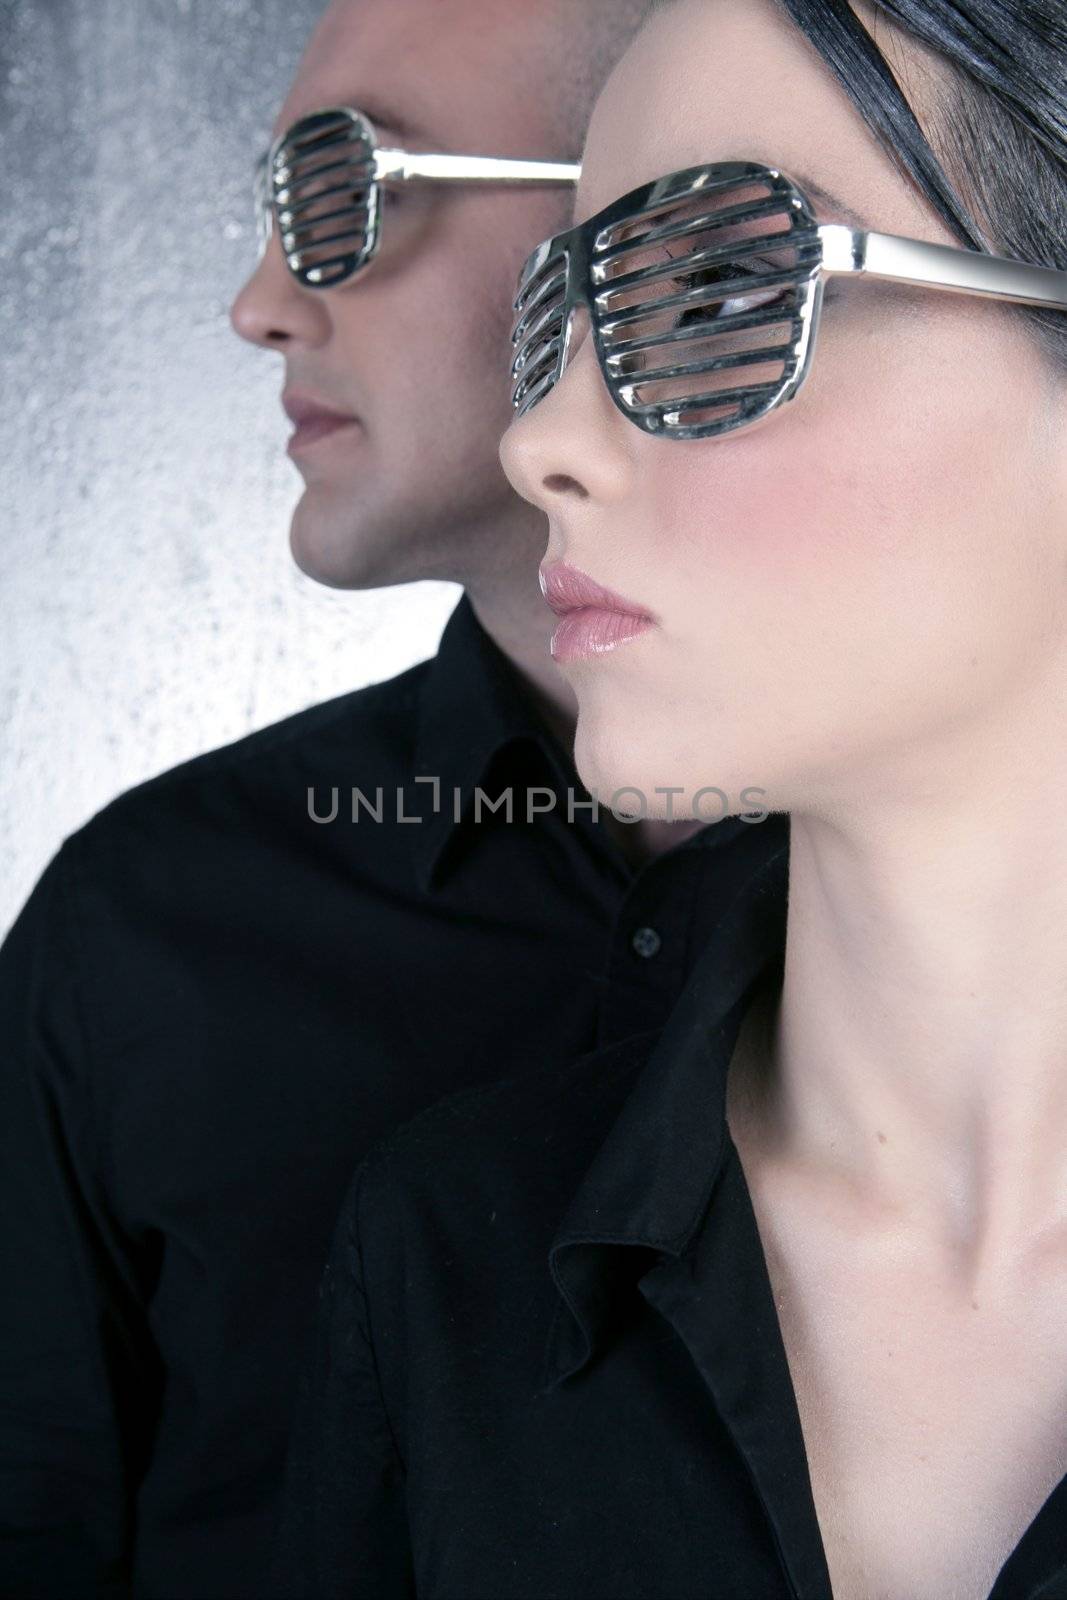 futuristic silver glasses couple portrait profile by lunamarina